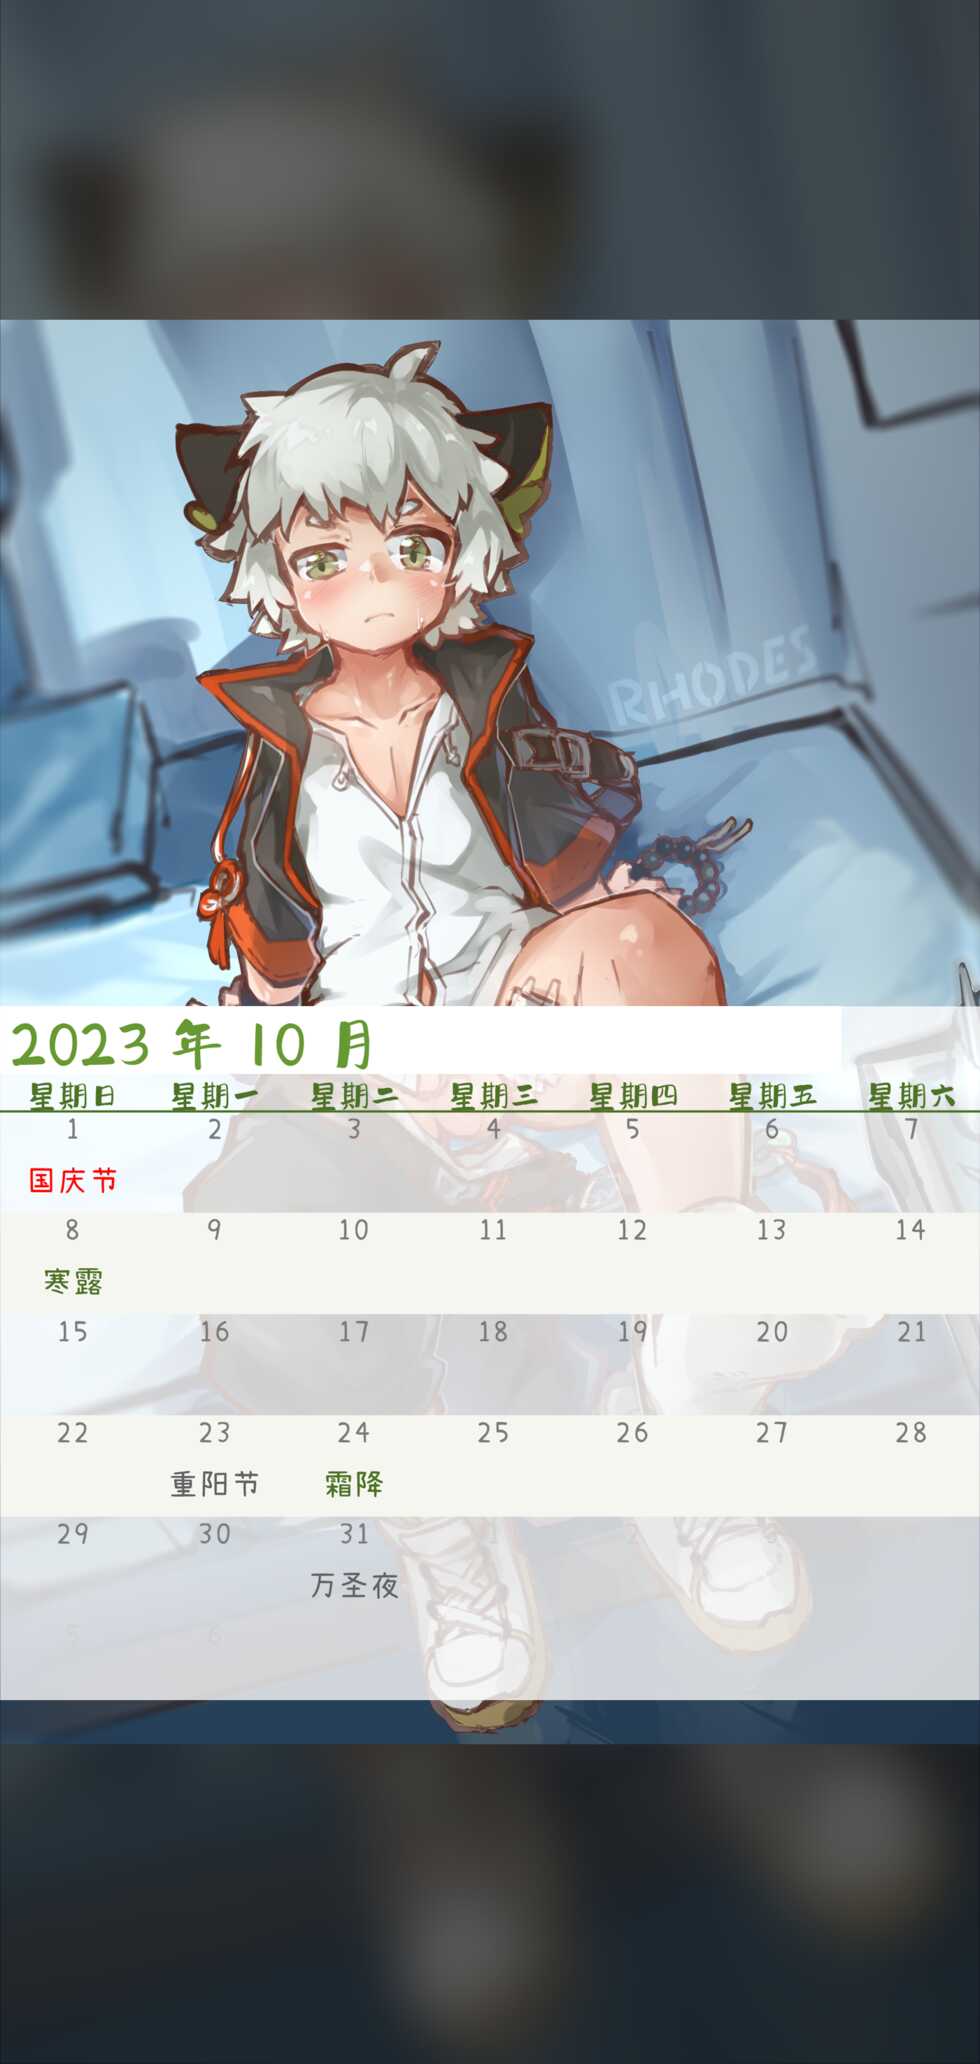 [Suka Genmei] Luo Xiaohei Calendar - Page 13